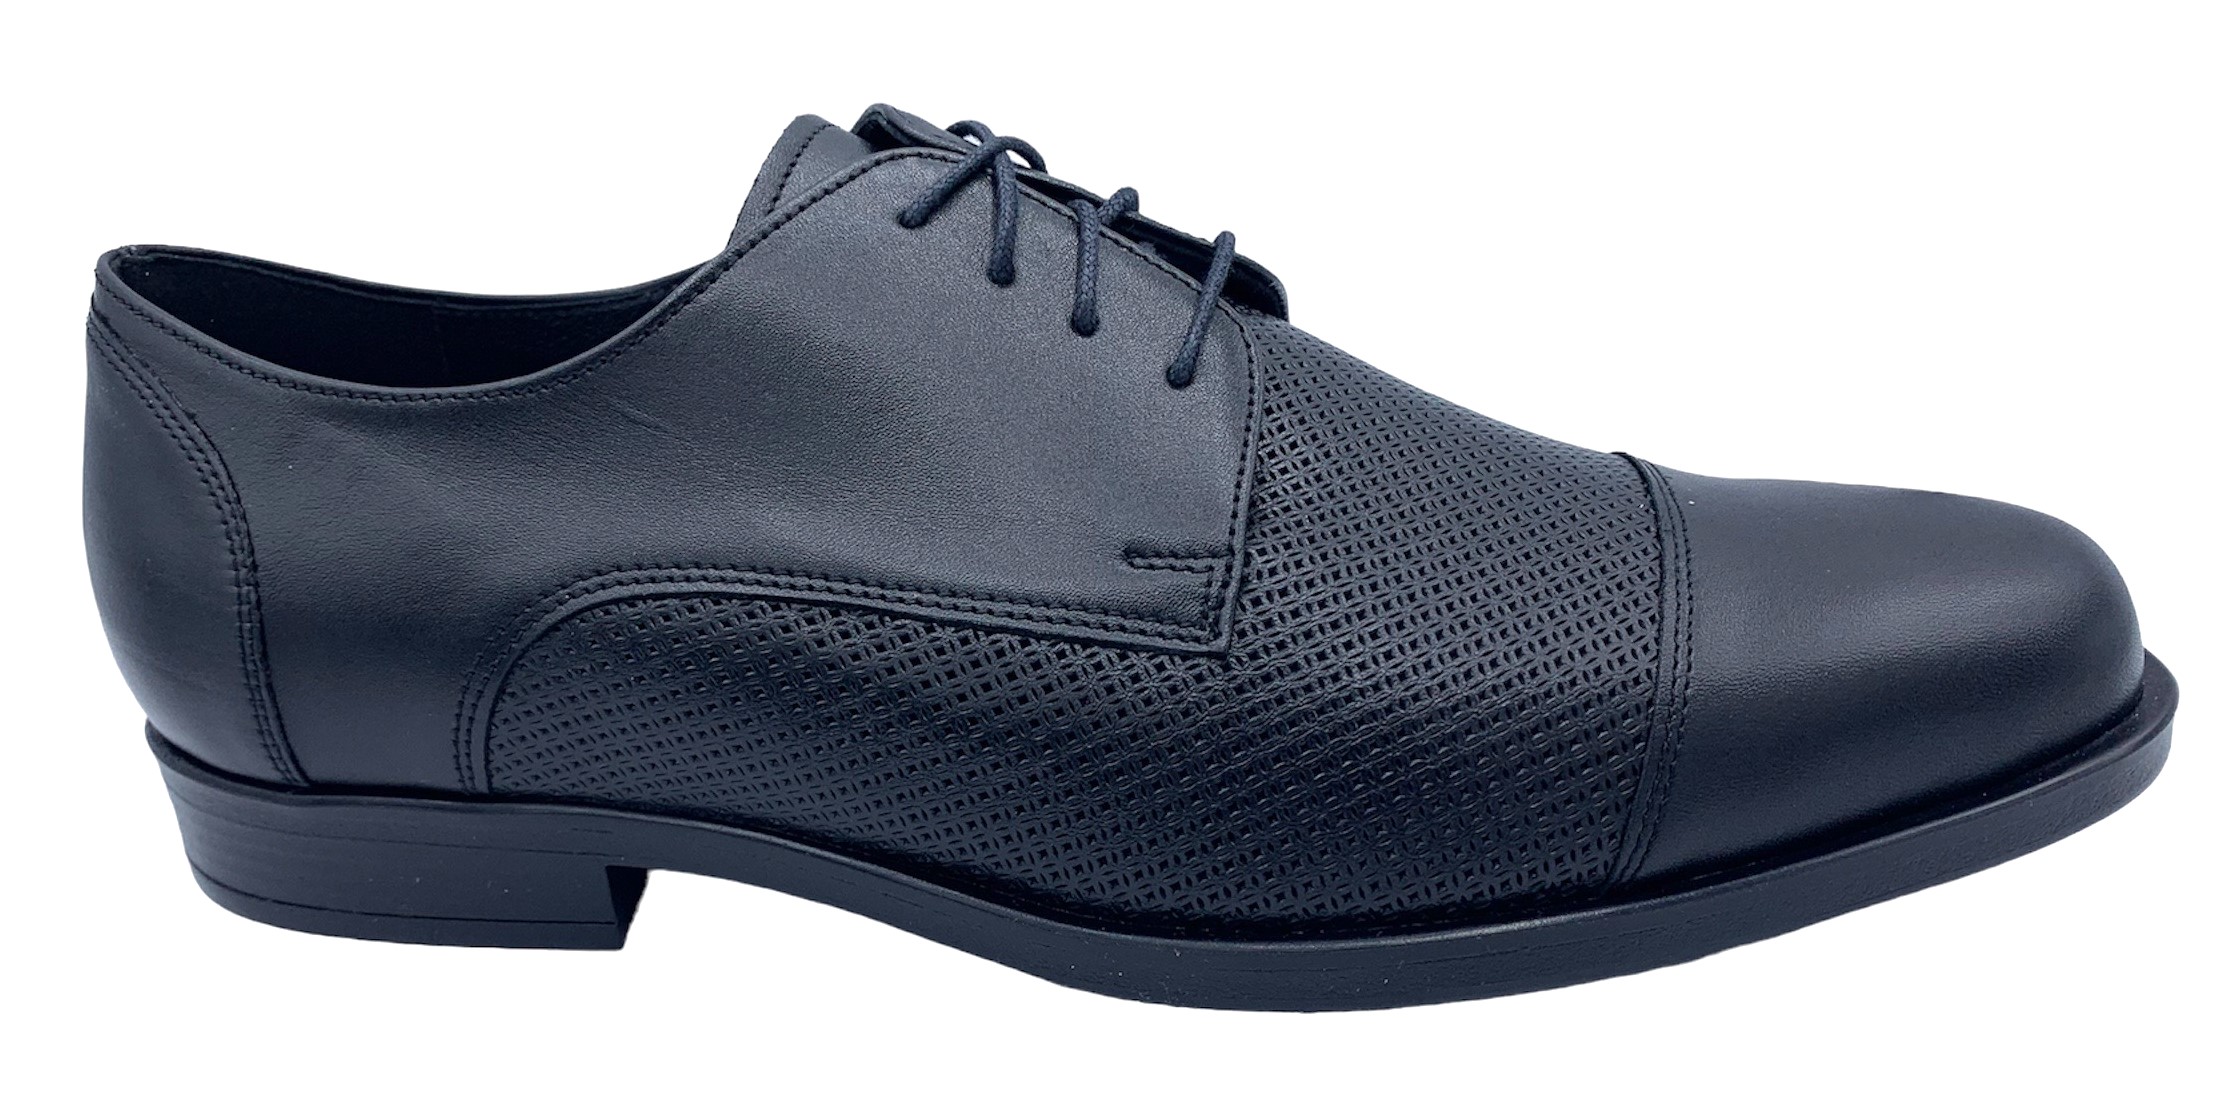 Pánská společenská obuv Barton 51917 černá Velikost: 41 (EU)